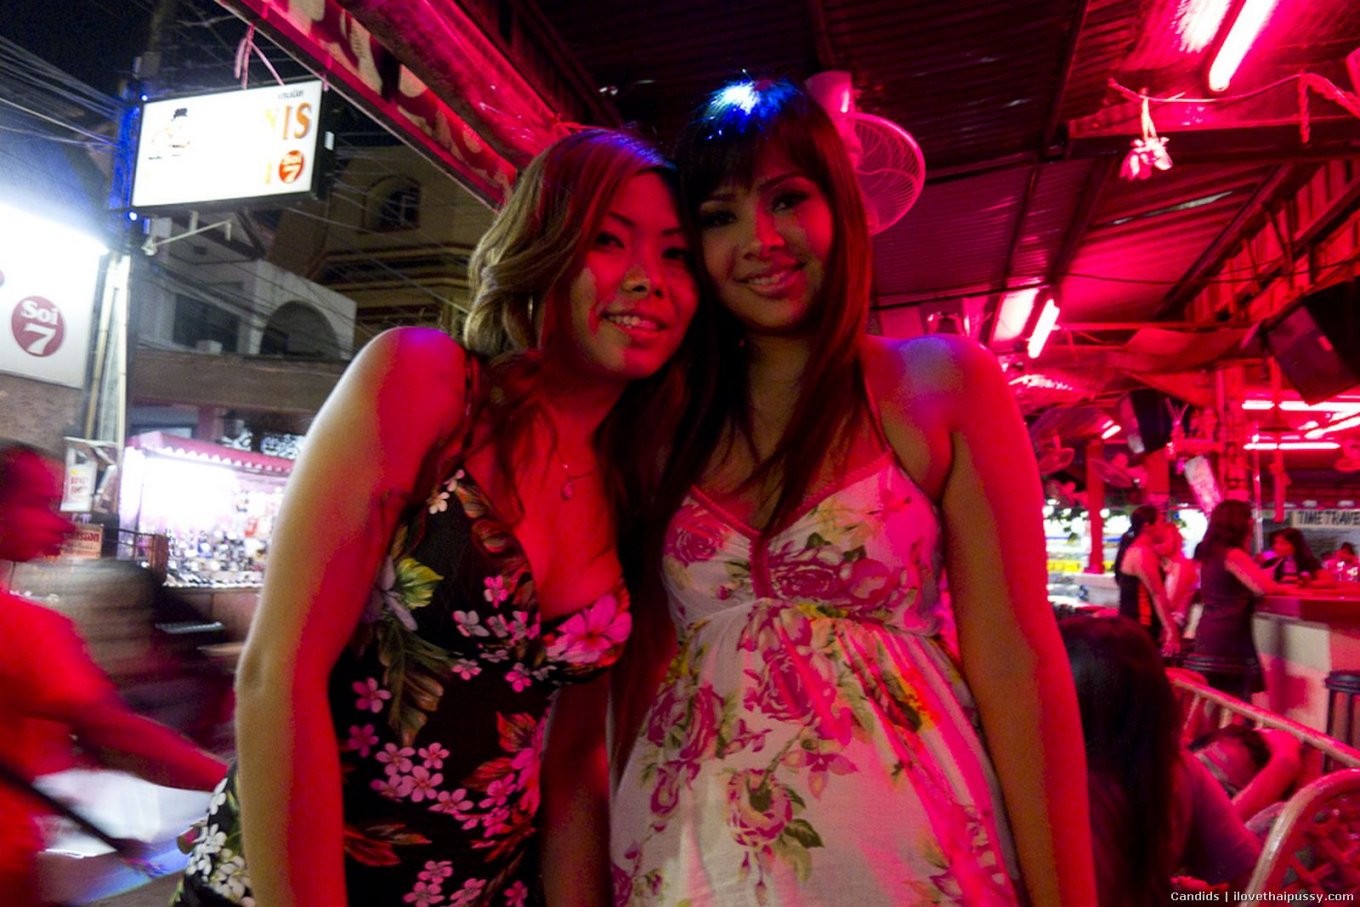 Dreckig thailändisch bargirl Huren gefickt bareback kein Kondom roh riskant sex tourismus asiatisch 
 #68113028